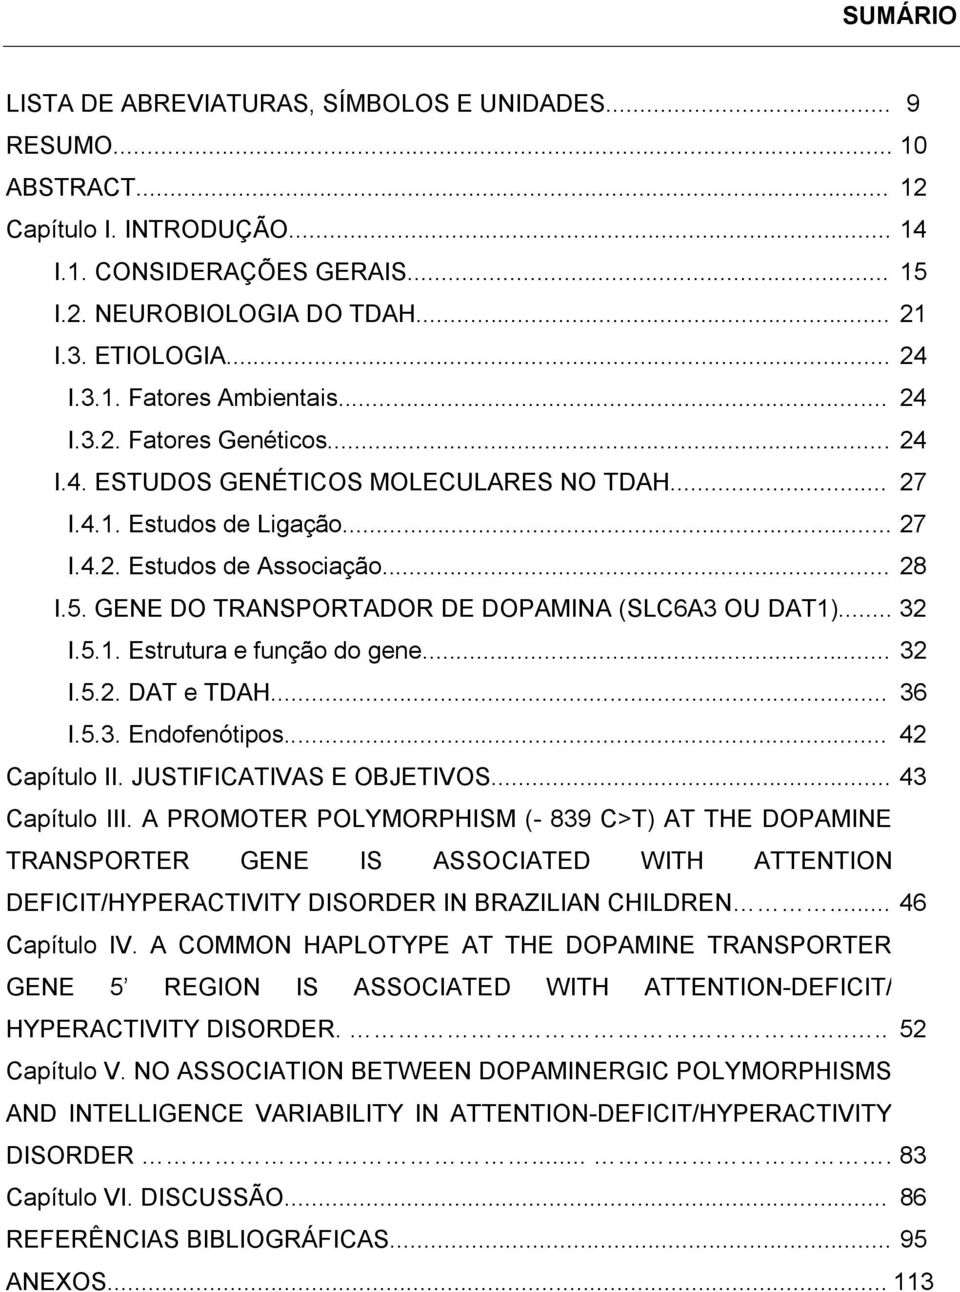 GENE DO TRANSPORTADOR DE DOPAMINA (SLC6A3 OU DAT1)... 32 I.5.1. Estrutura e função do gene... 32 I.5.2. DAT e TDAH... 36 I.5.3. Endofenótipos... 42 Capítulo II. JUSTIFICATIVAS E OBJETIVOS.